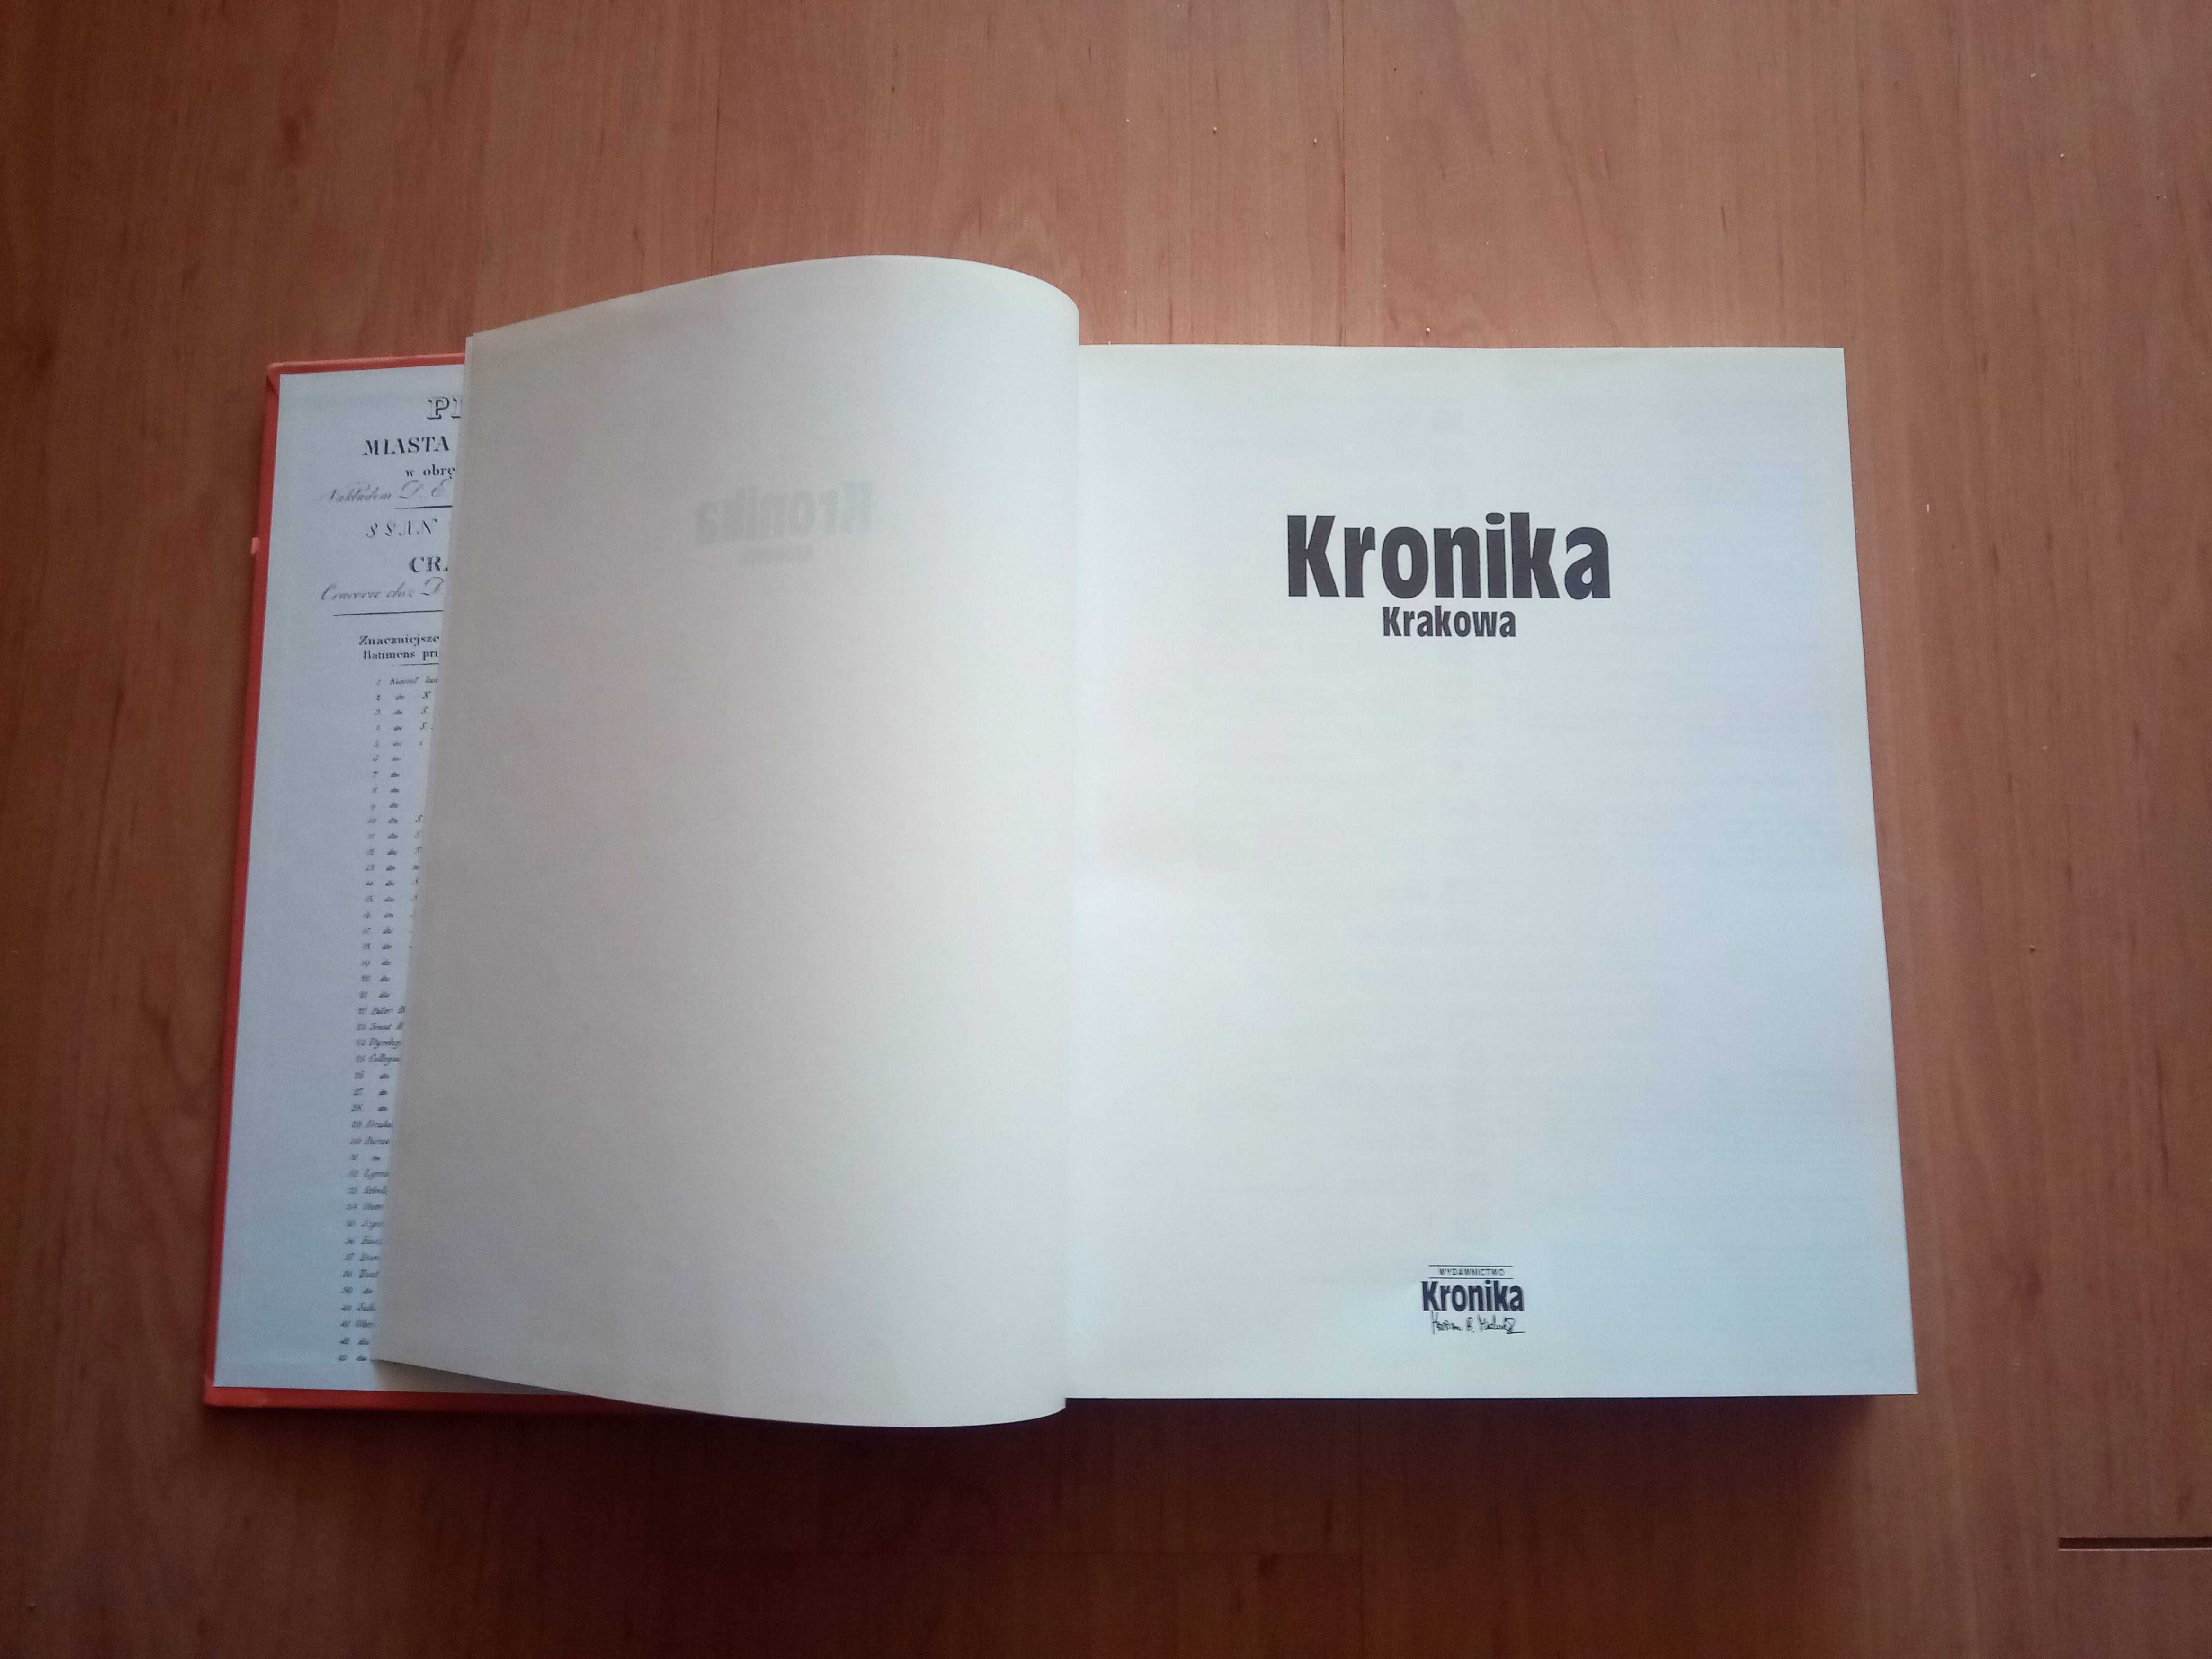 Kronika Krakowa - album, książka